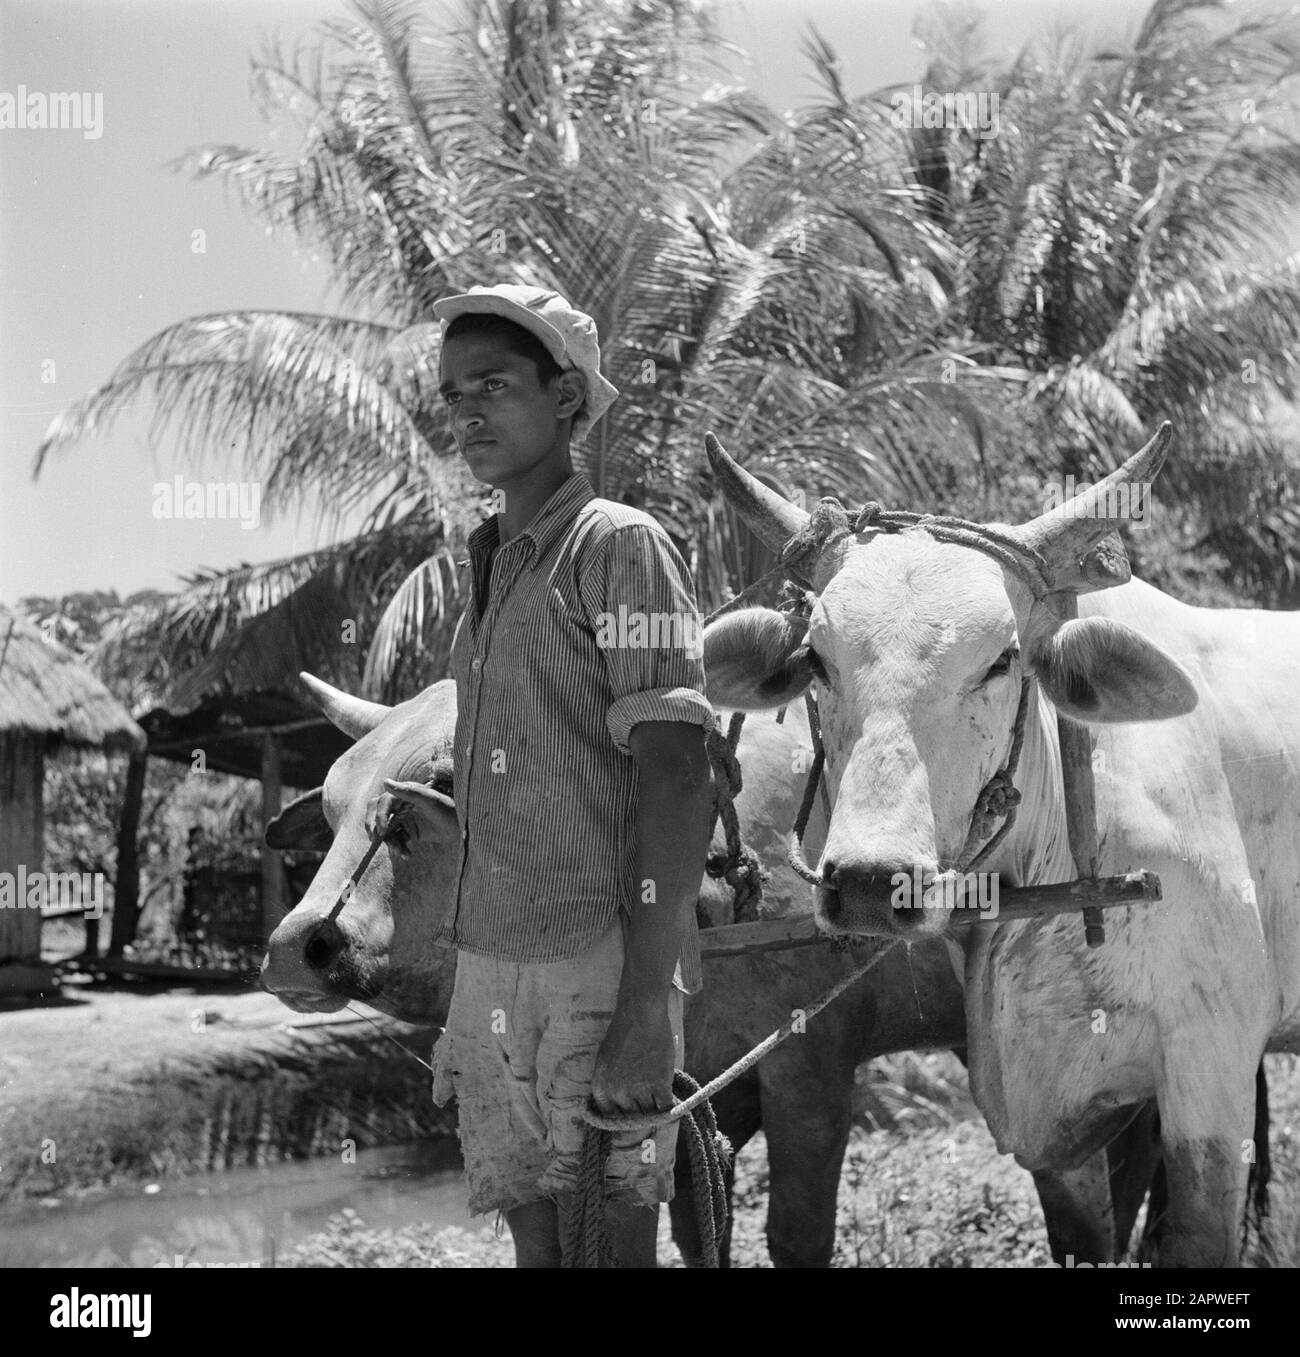 Viaggio in Suriname e Antille Olandesi uomo con karbouwen Data: 1947 luogo: Suriname Parole Chiave: Popolazione indigena, buoi Foto Stock